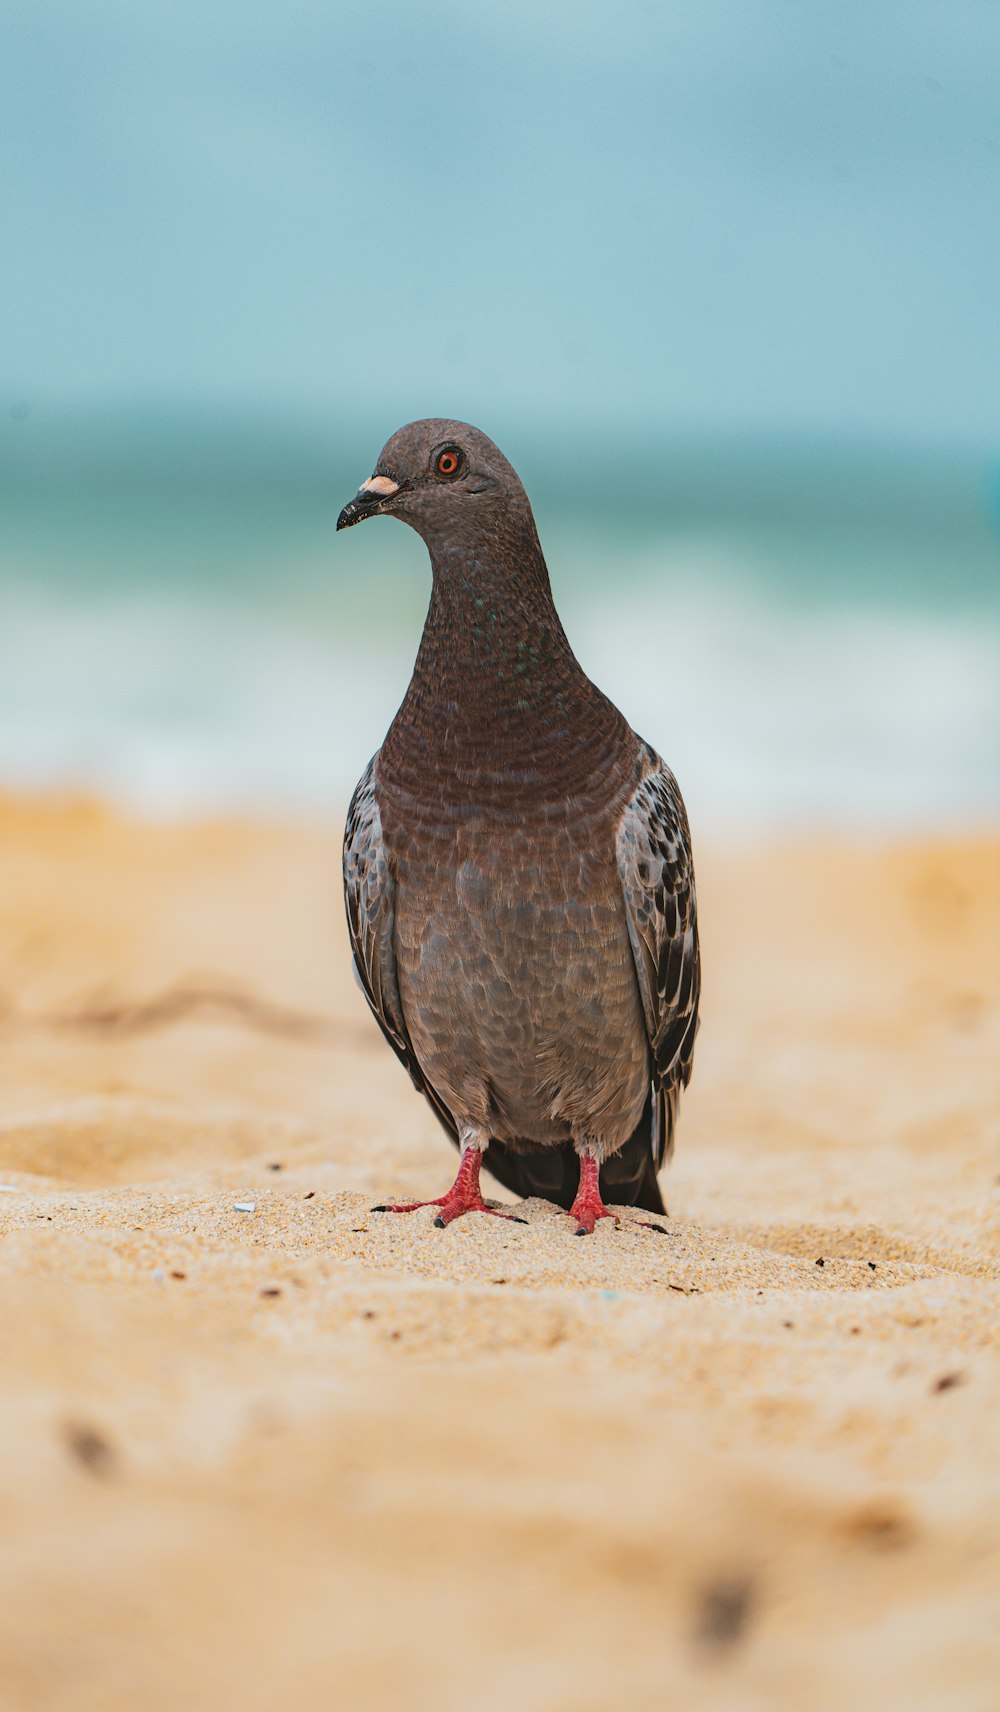 a bird standing on a sandy beach next to the ocean